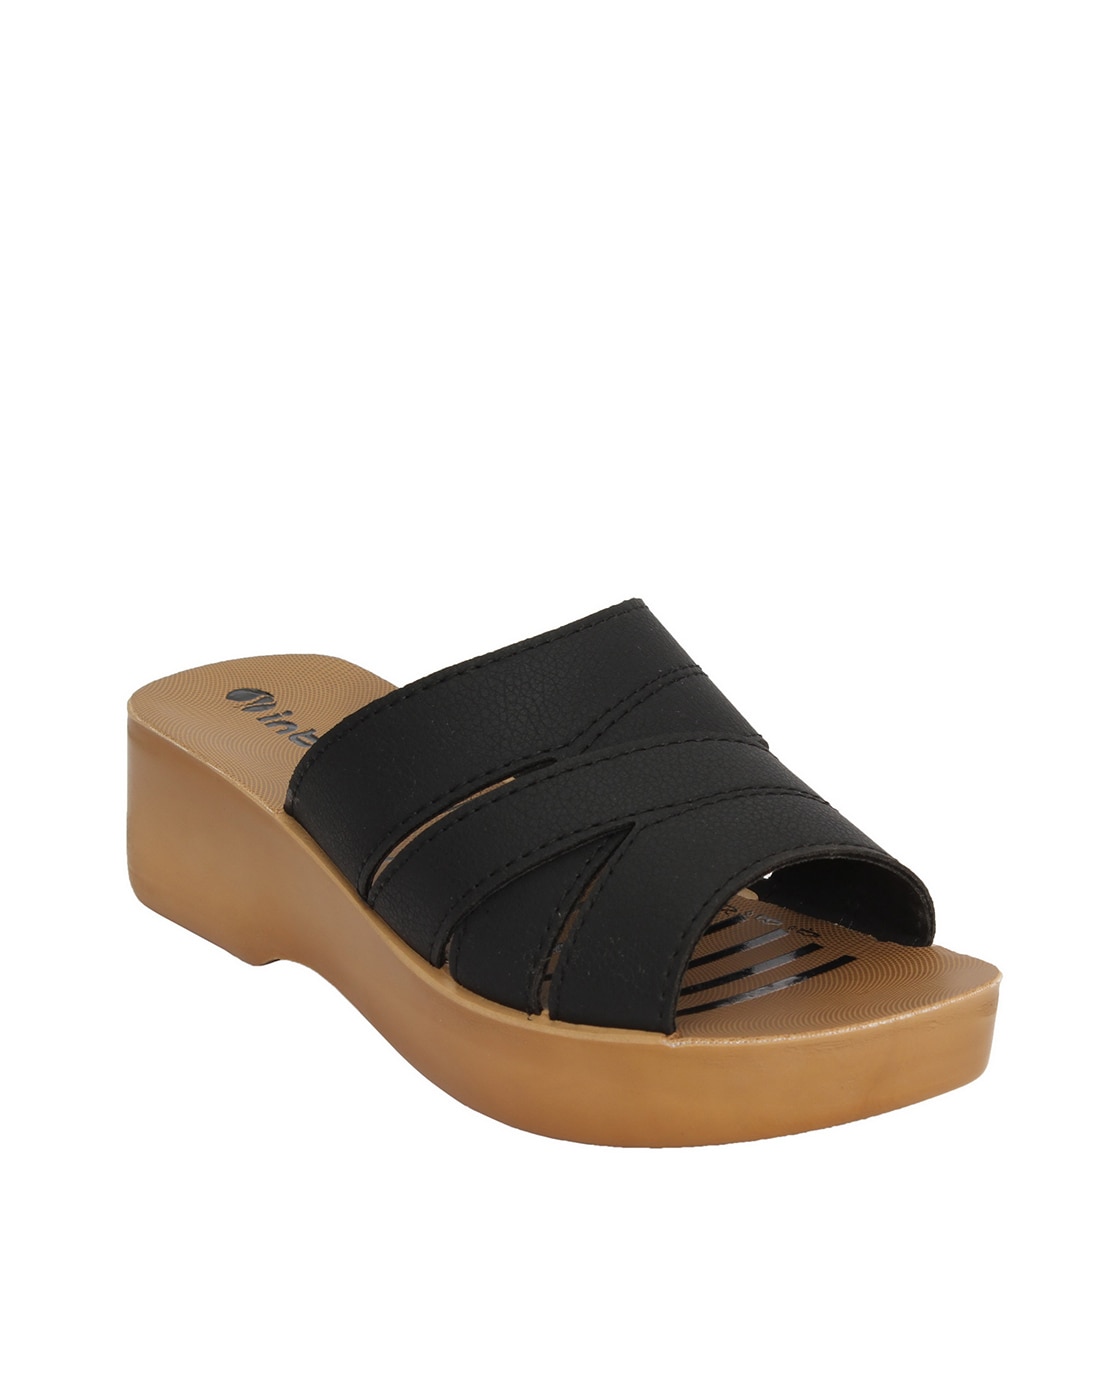 Buy Multi Flip Flop & Slippers for Women by INBLU Online | Ajio.com